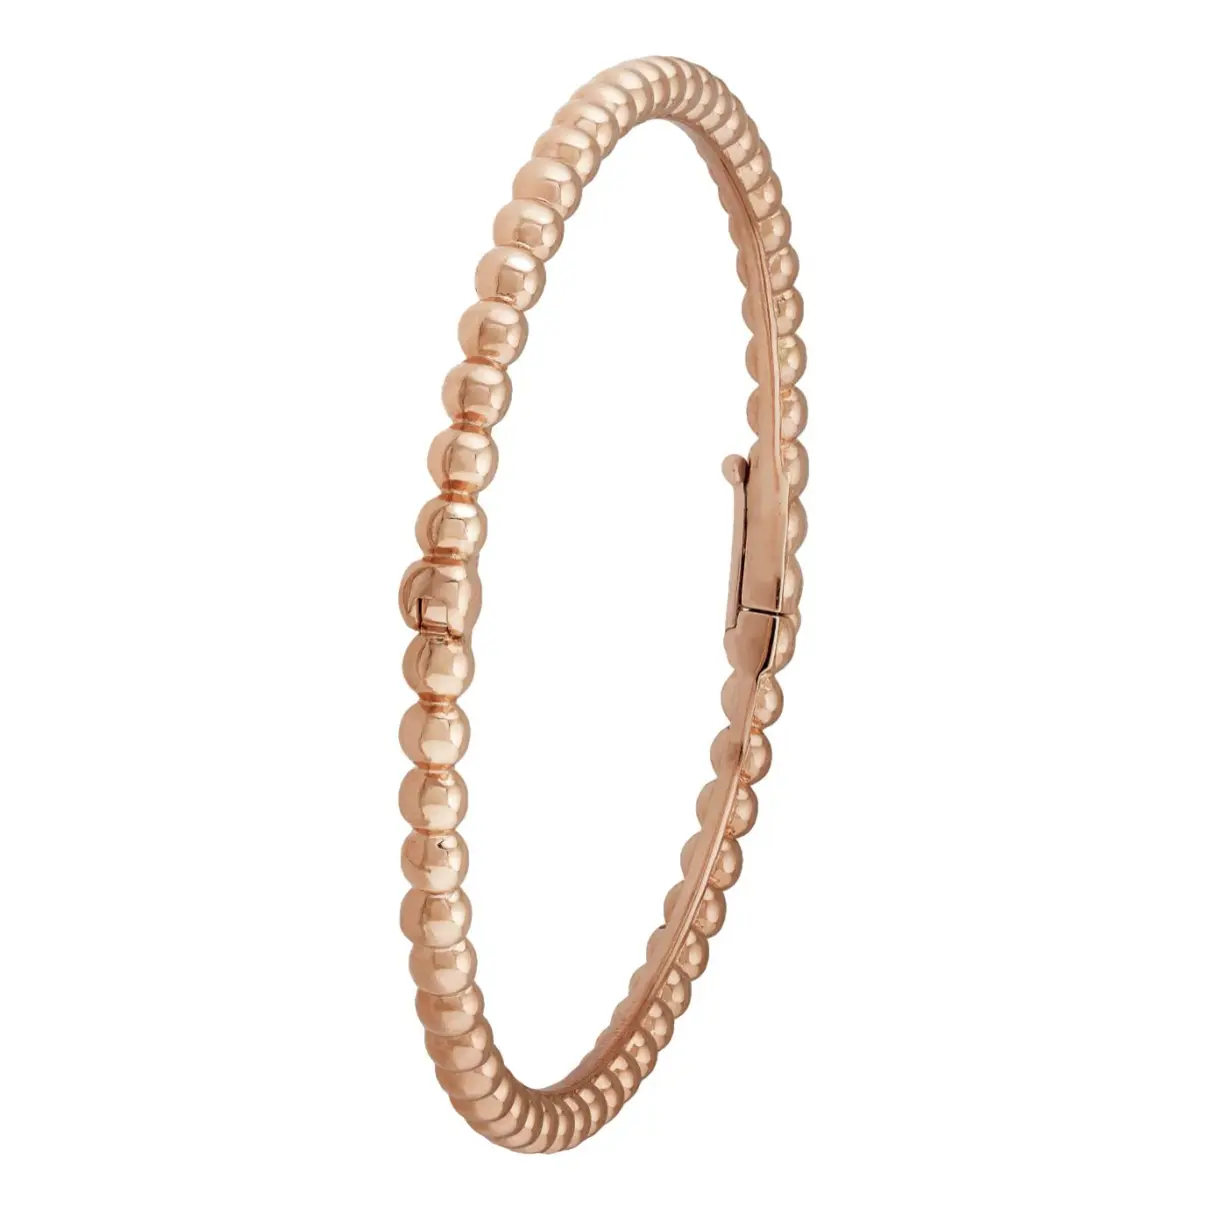 Perlée pink gold bracelet